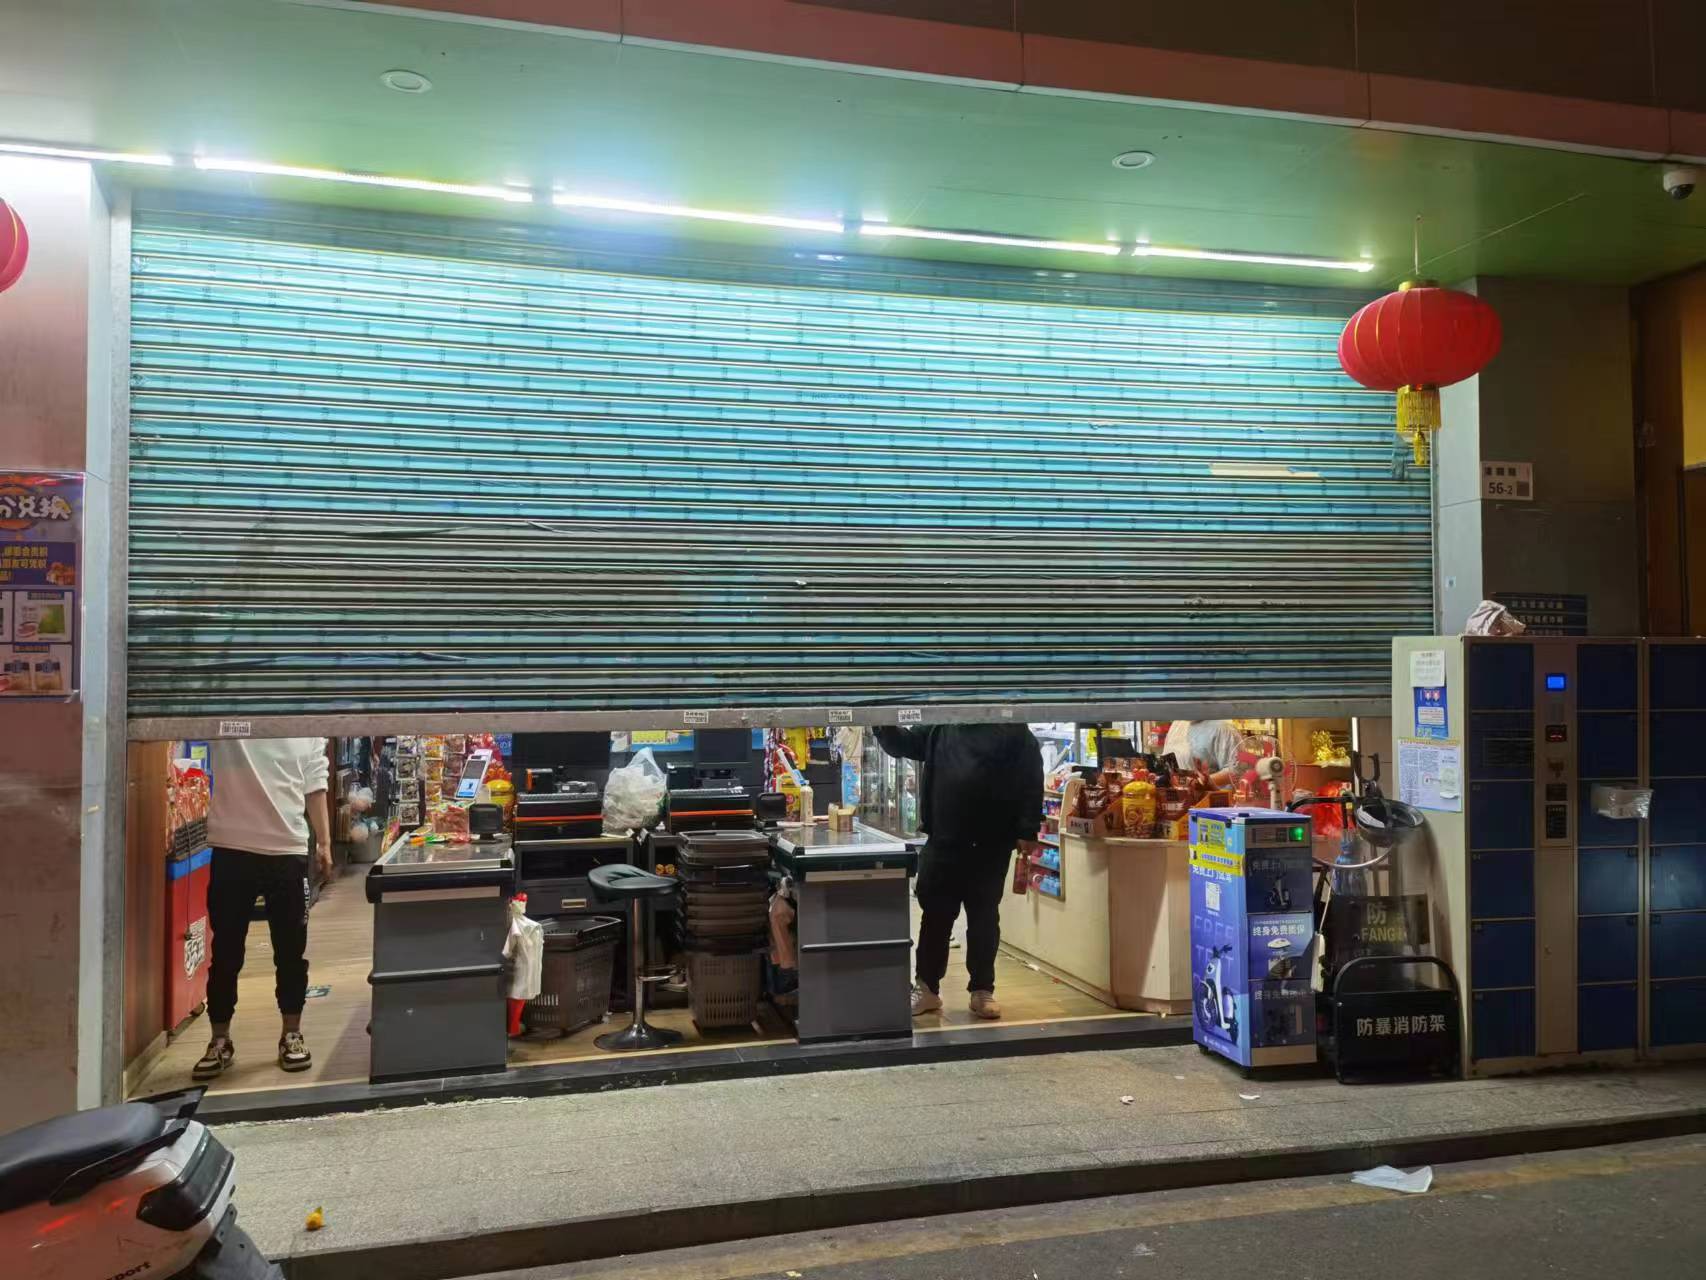 晚上8点多便准备关门的生活超市 陈熊海摄